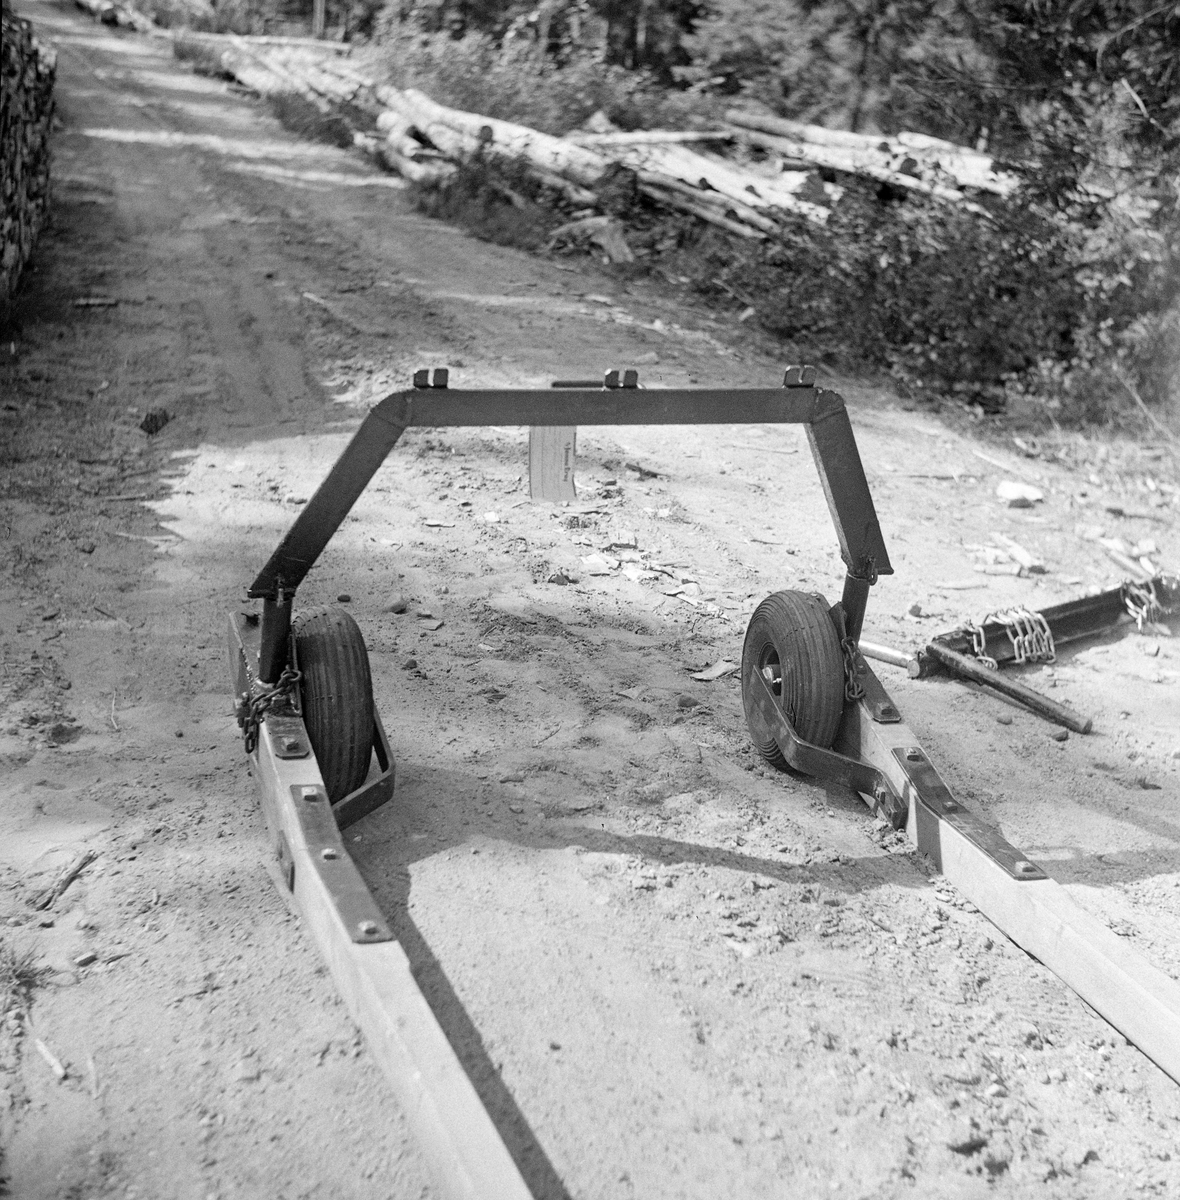 Hjulgående bøyledrag, konstruert av Anton Hansen. Dette er barmarkutgaven av et redskap skogsarbeideren Emil Ruud fra Nord-Odal hadde lansert (1937) for lunning på snødekt mark. Ruuds modell var et redskap der dragarmene (skjækene) var forlenget bakover, slik at de jernbeslåtte bakre endene skulle kunne fungere som meier. Hansen erstattet de jernbeslåtte skåkendene med luftfylte gummihjul. På oversida av dragarmenes ytterender hadde Hansen, som Ruud, festet ei kraftig jernbøyle. Sentralt på toppen av denne bøyla var det påsveiset jernbeslag med hakk for tre snarelenker - kjetttingstumper - som ble viklet et par ganger rundt endene på de stokkene som skulle lunnes. Deretter ble stokkene løftet litt og kjettingene ble festet i hakk i et jernbeslag på toppen av bøyledraget. Dette fotografiet er tatt på en skogbilveg.

Oppfinner: Anton Hansen. Fra «Skogeieren».